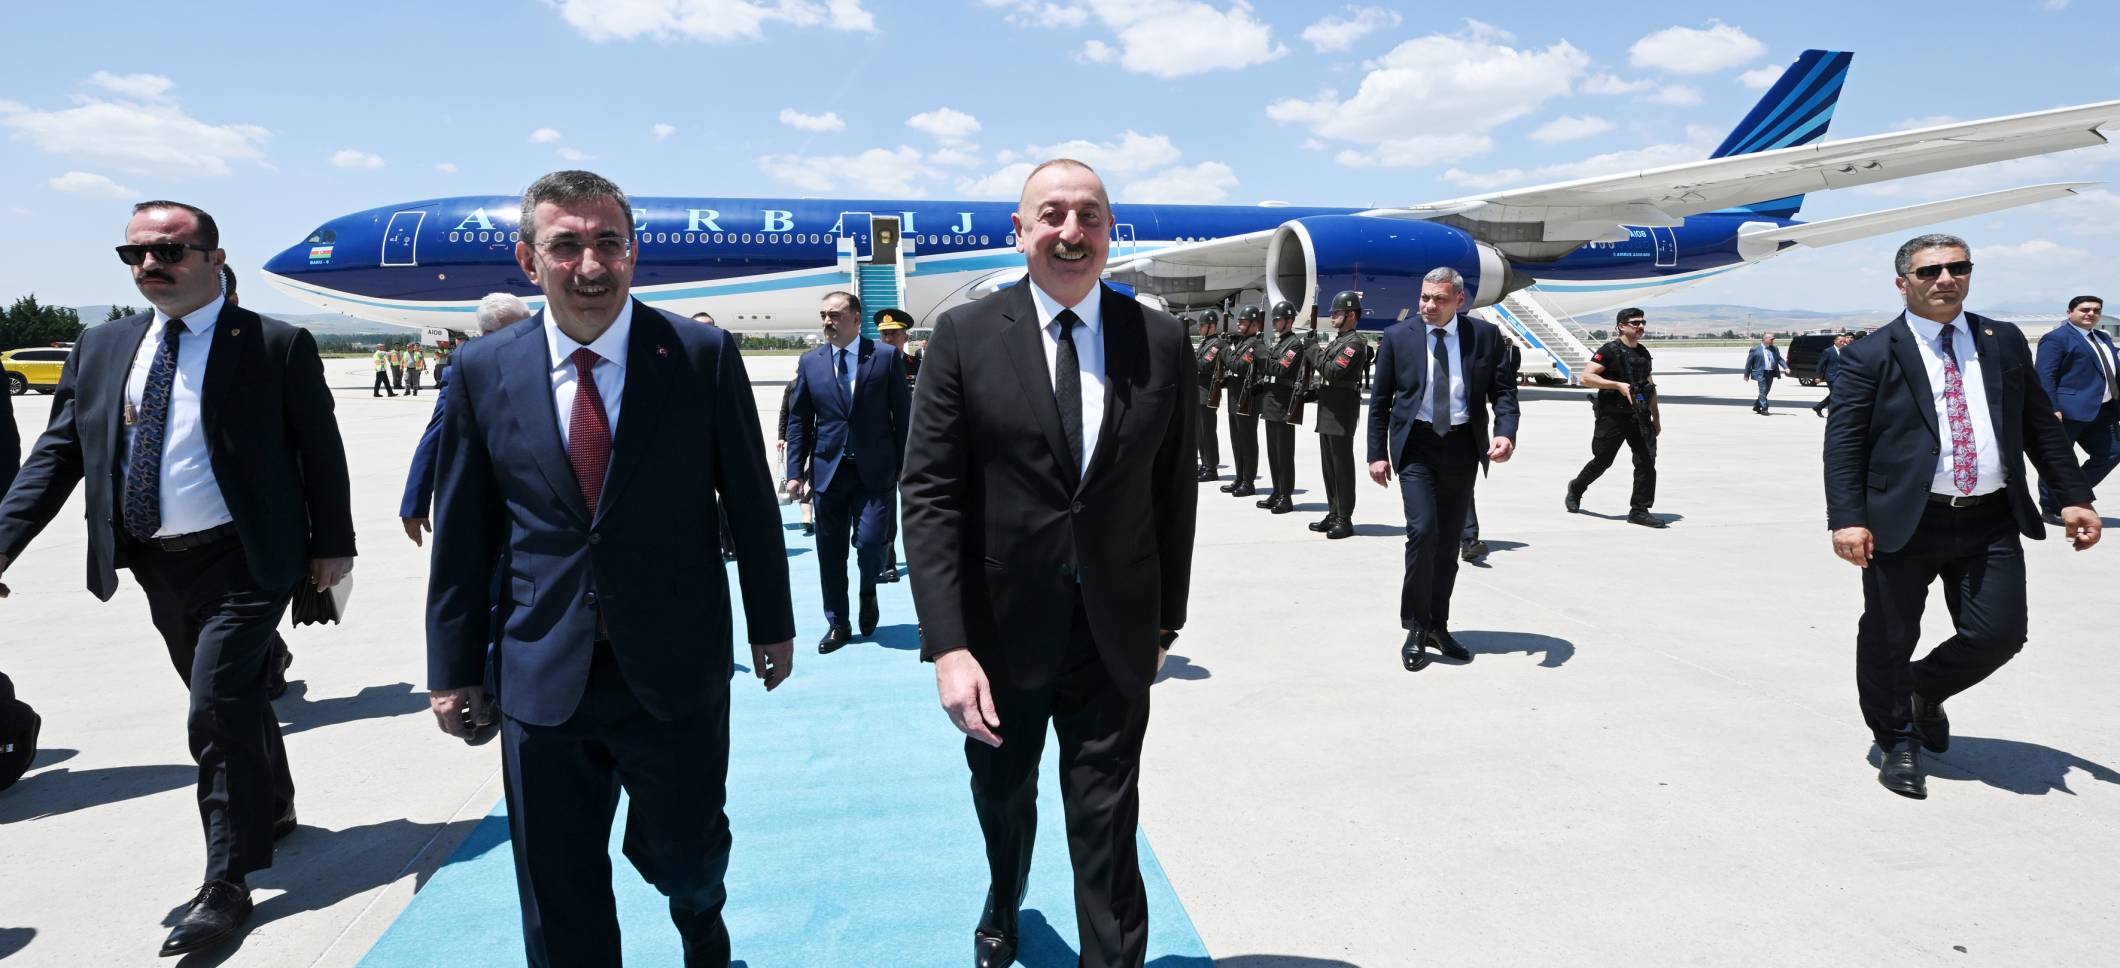 Ильхам Алиев по приглашению Президента Турции Реджепа Тайипа Эрдогана прибыл с рабочим визитом в Анкару